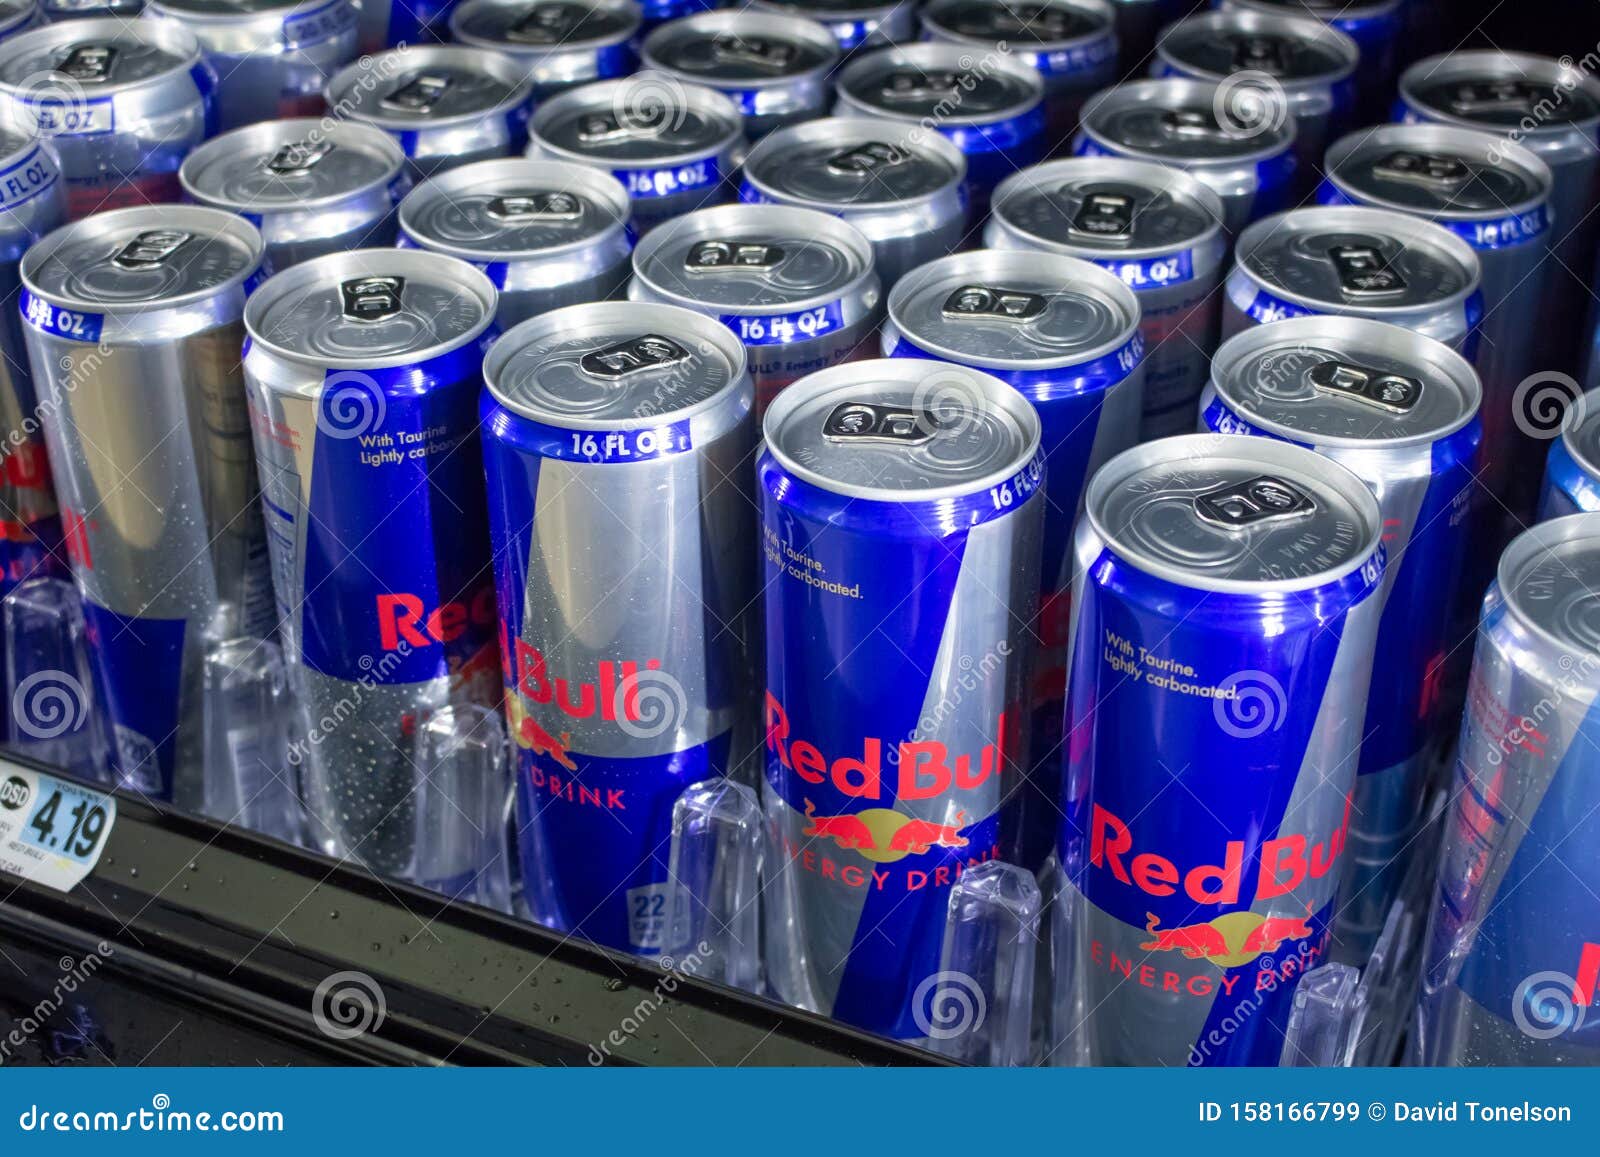 succes winnaar Verfijnen Red Bull in de winkel redactionele stock afbeelding. Image of verfrissing -  158166799